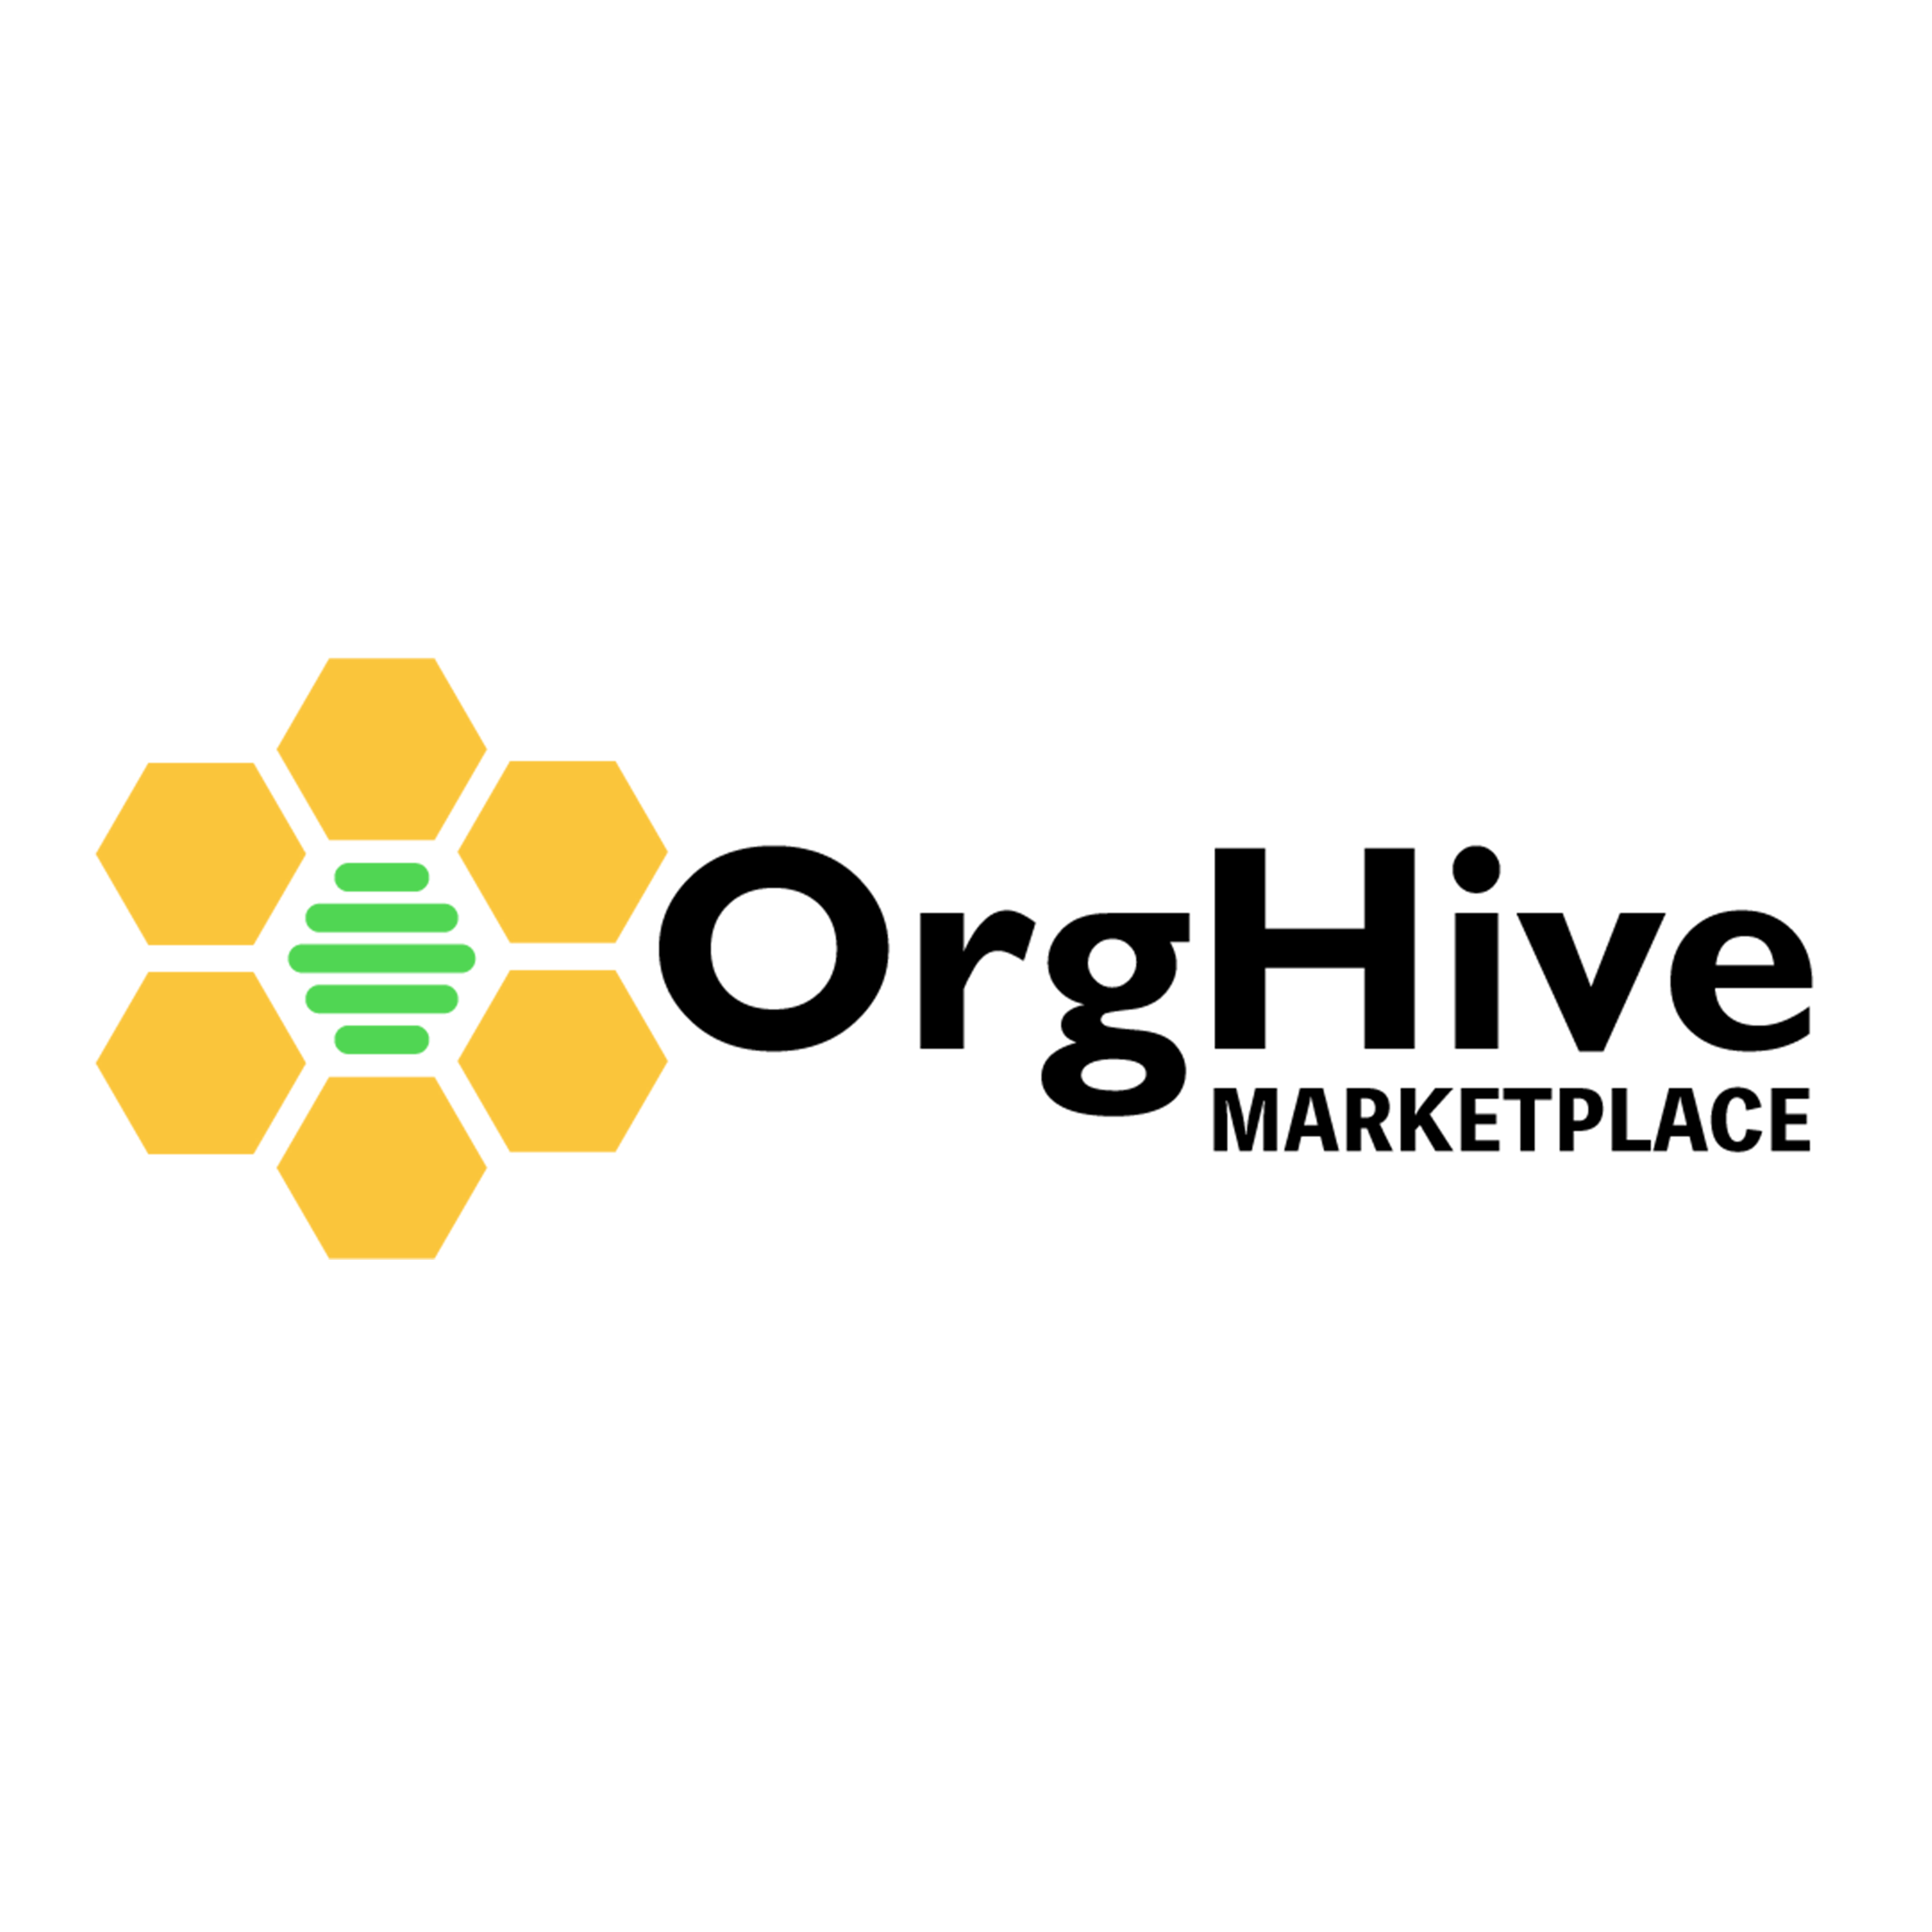 Orghive logo